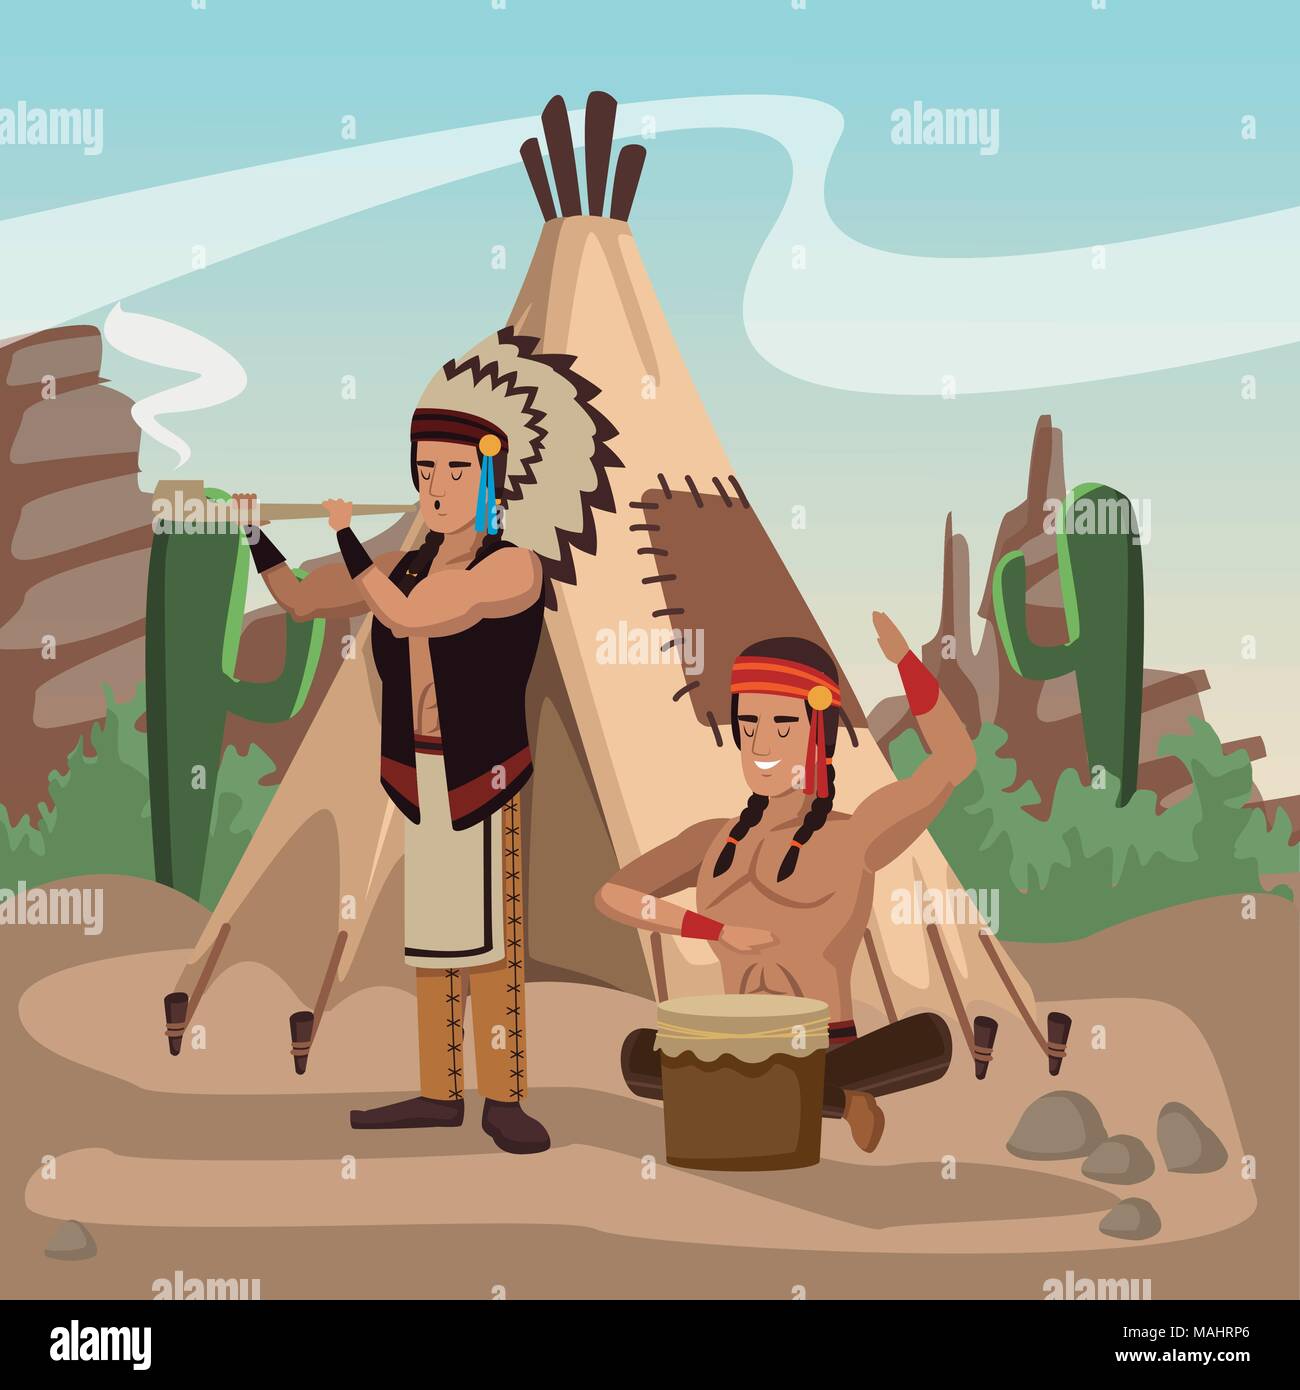 American Indian presso il Village Illustrazione Vettoriale